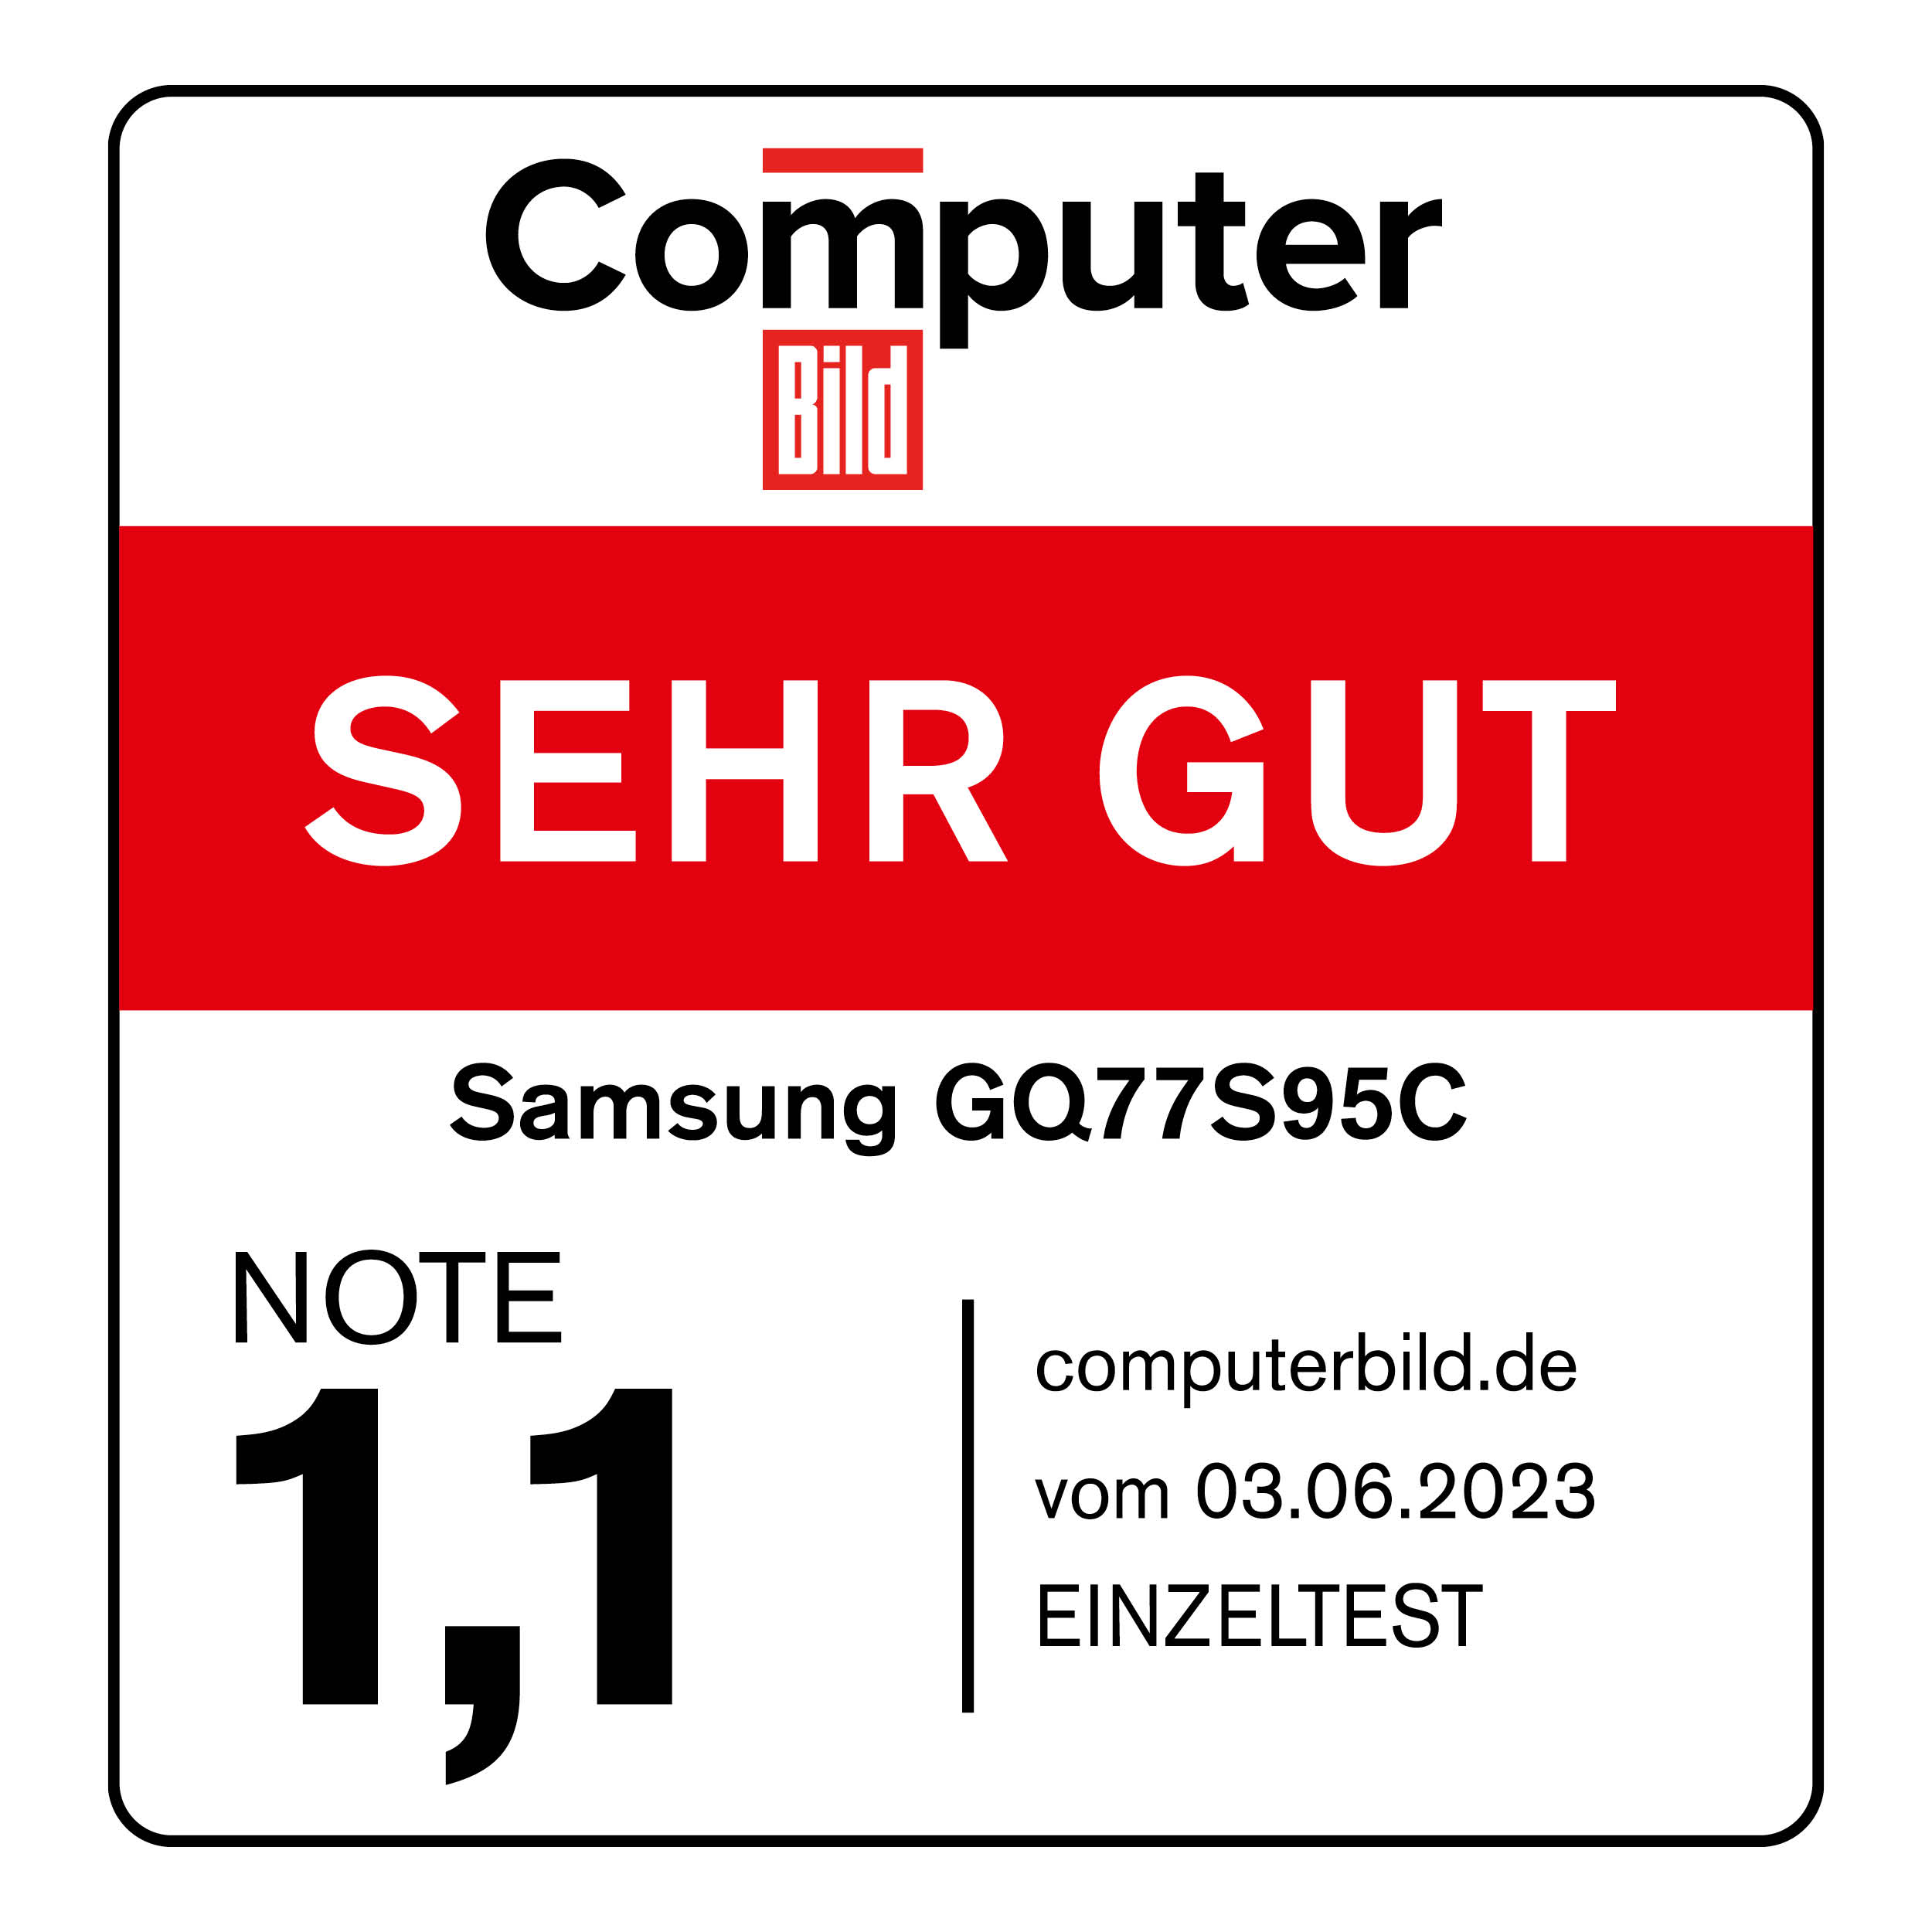 120855_Computer_Bild_sehr_gut_Samsung_GQ77S95C_06_2023_mitAngaben